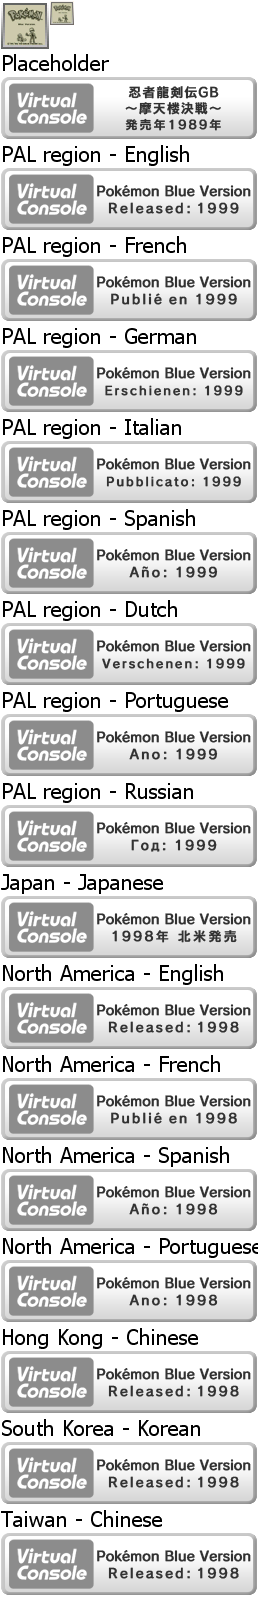 Virtual Console - Pokémon Blue Version